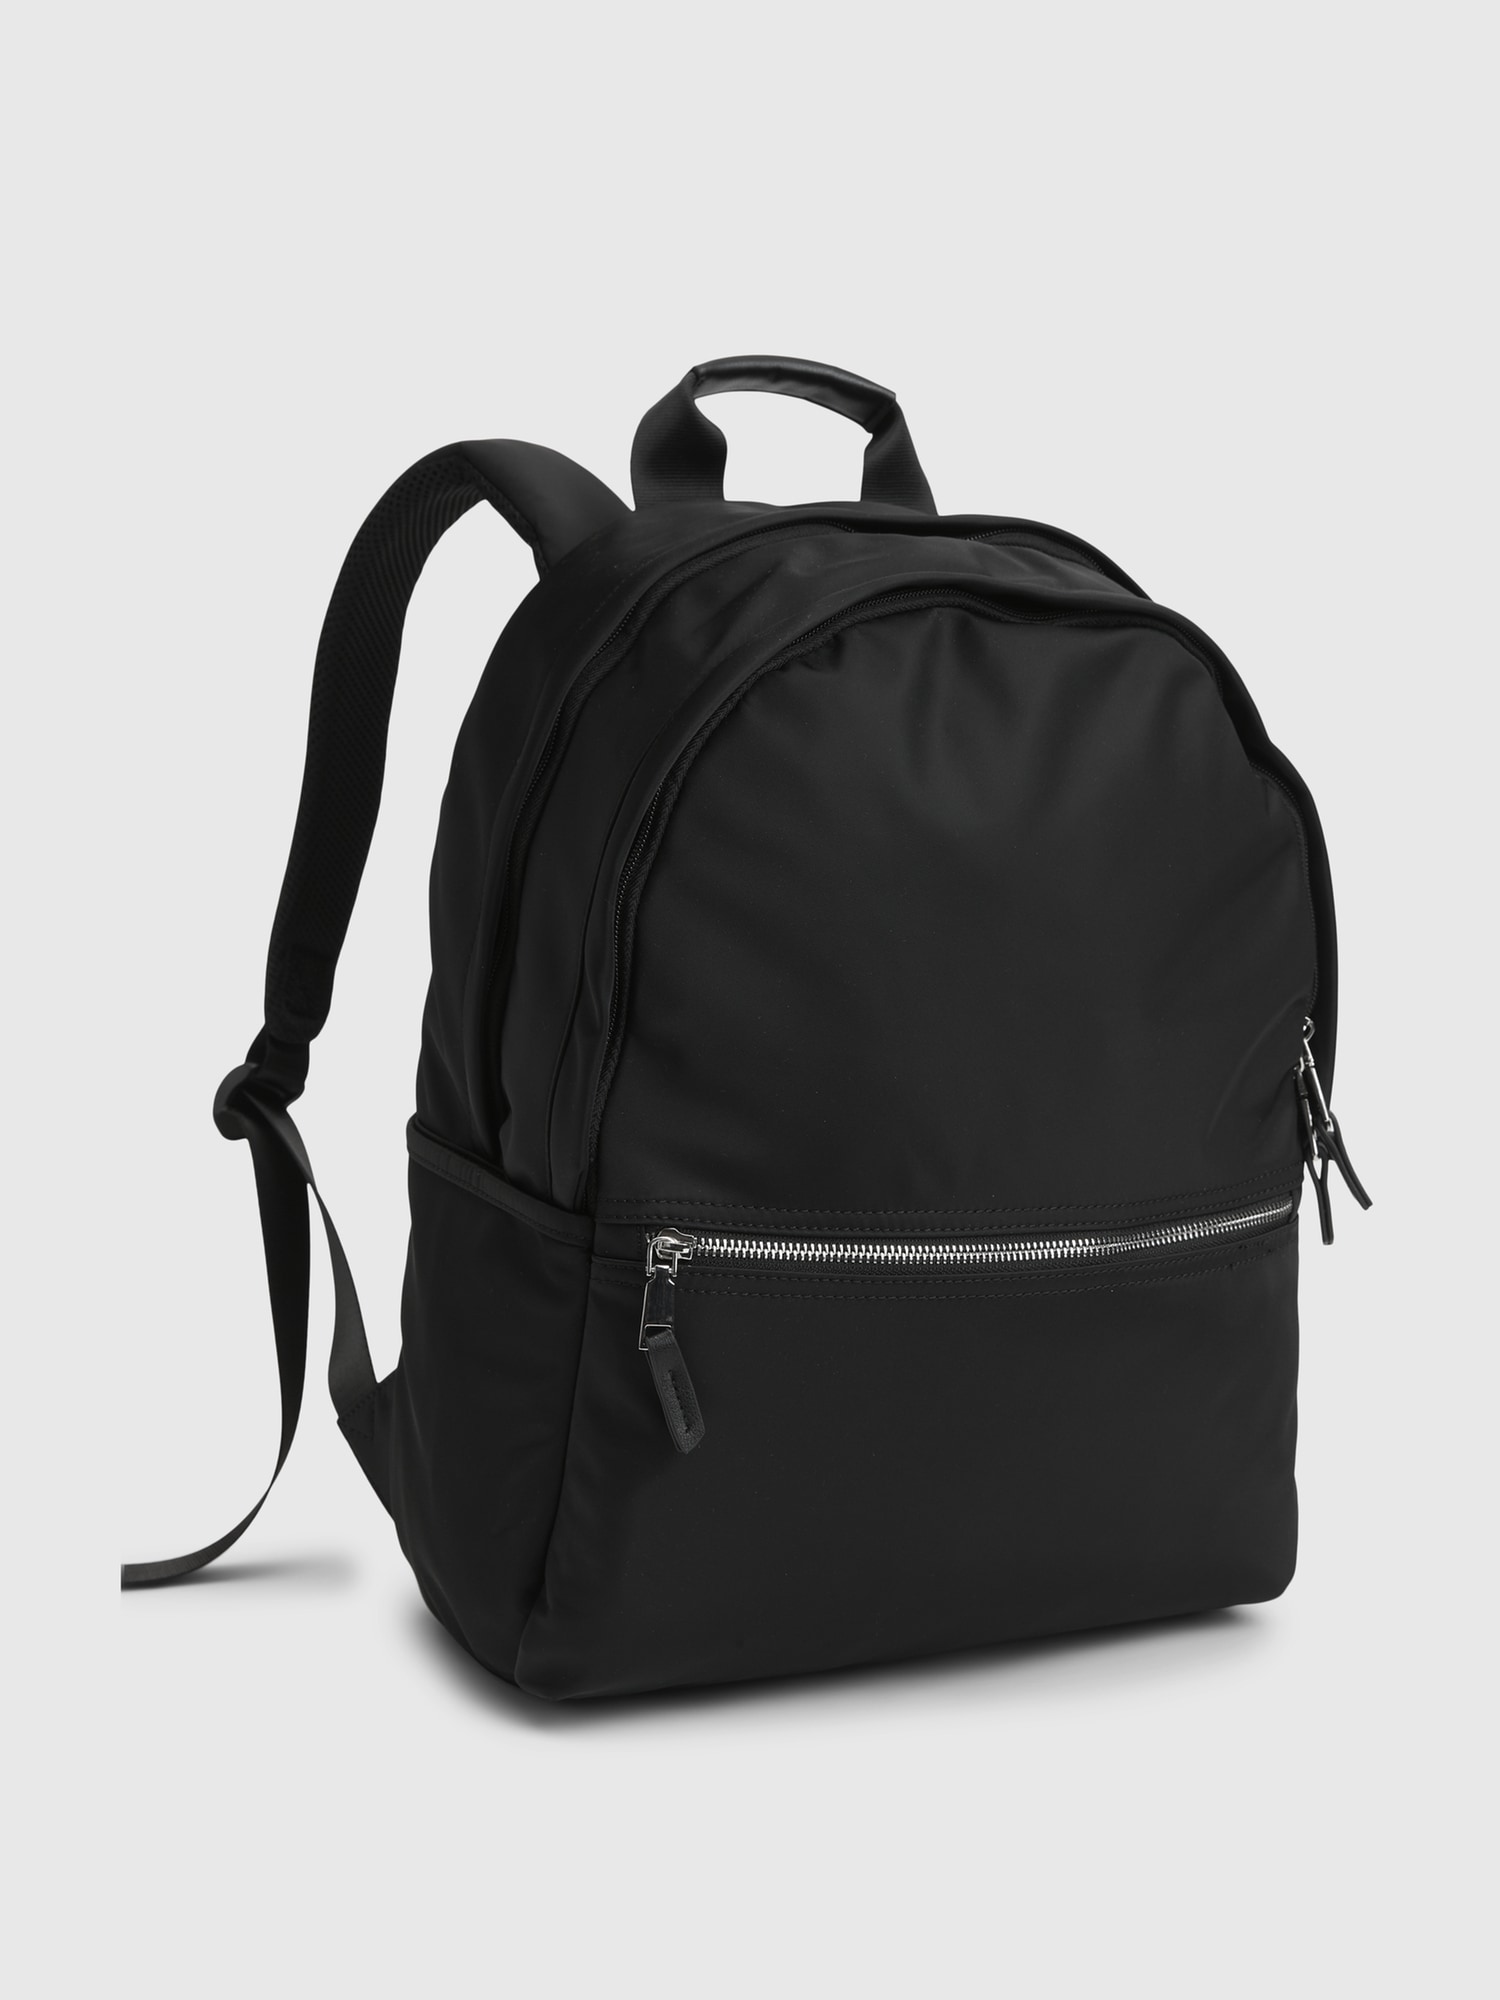 Gap Nylon Backpack In Black